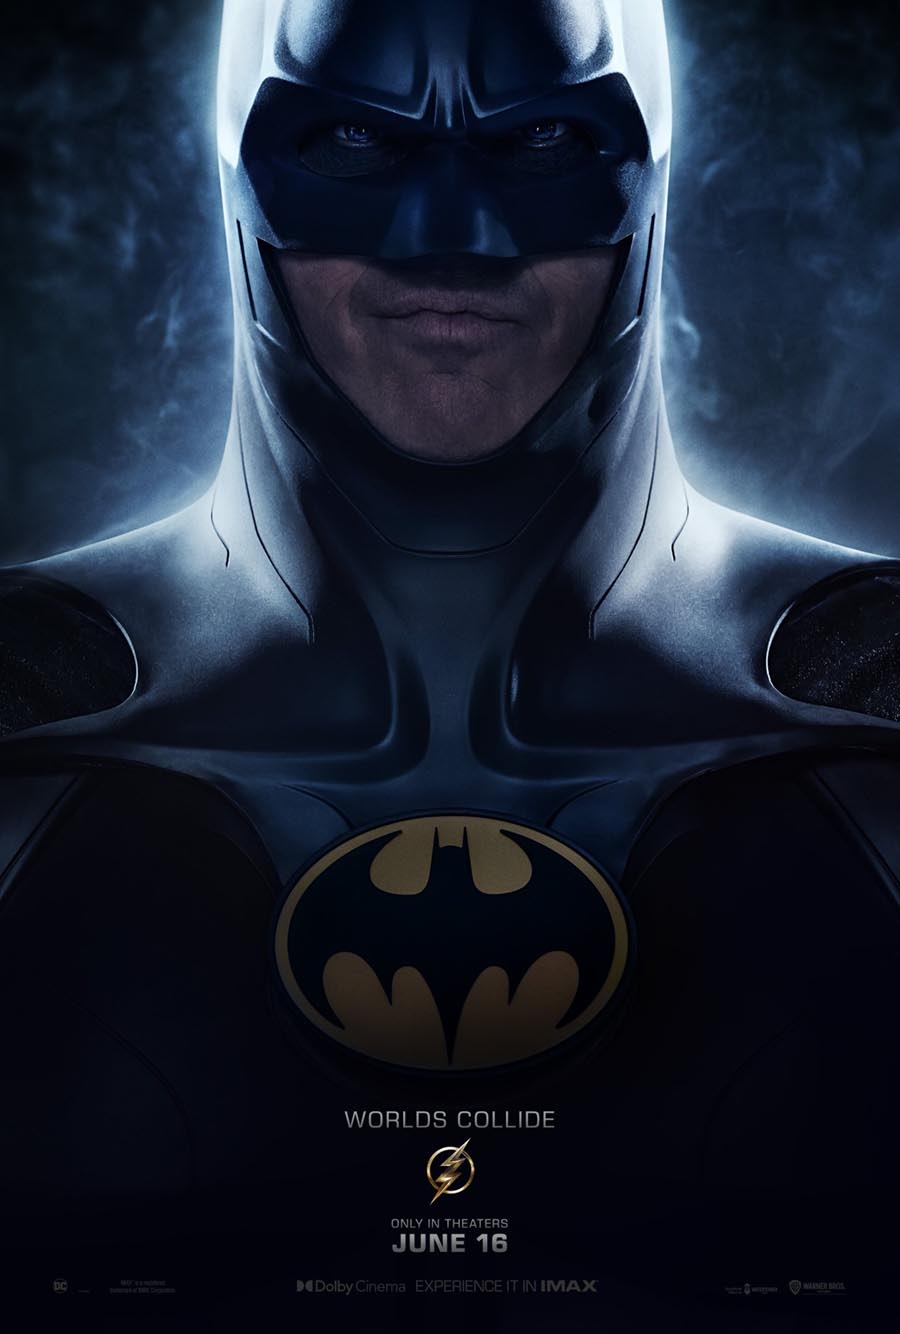 Destripando el Trailer de Batman Vuelve… otra vez (aunque dicen que es de  Flash) – BRAINSTOMPING